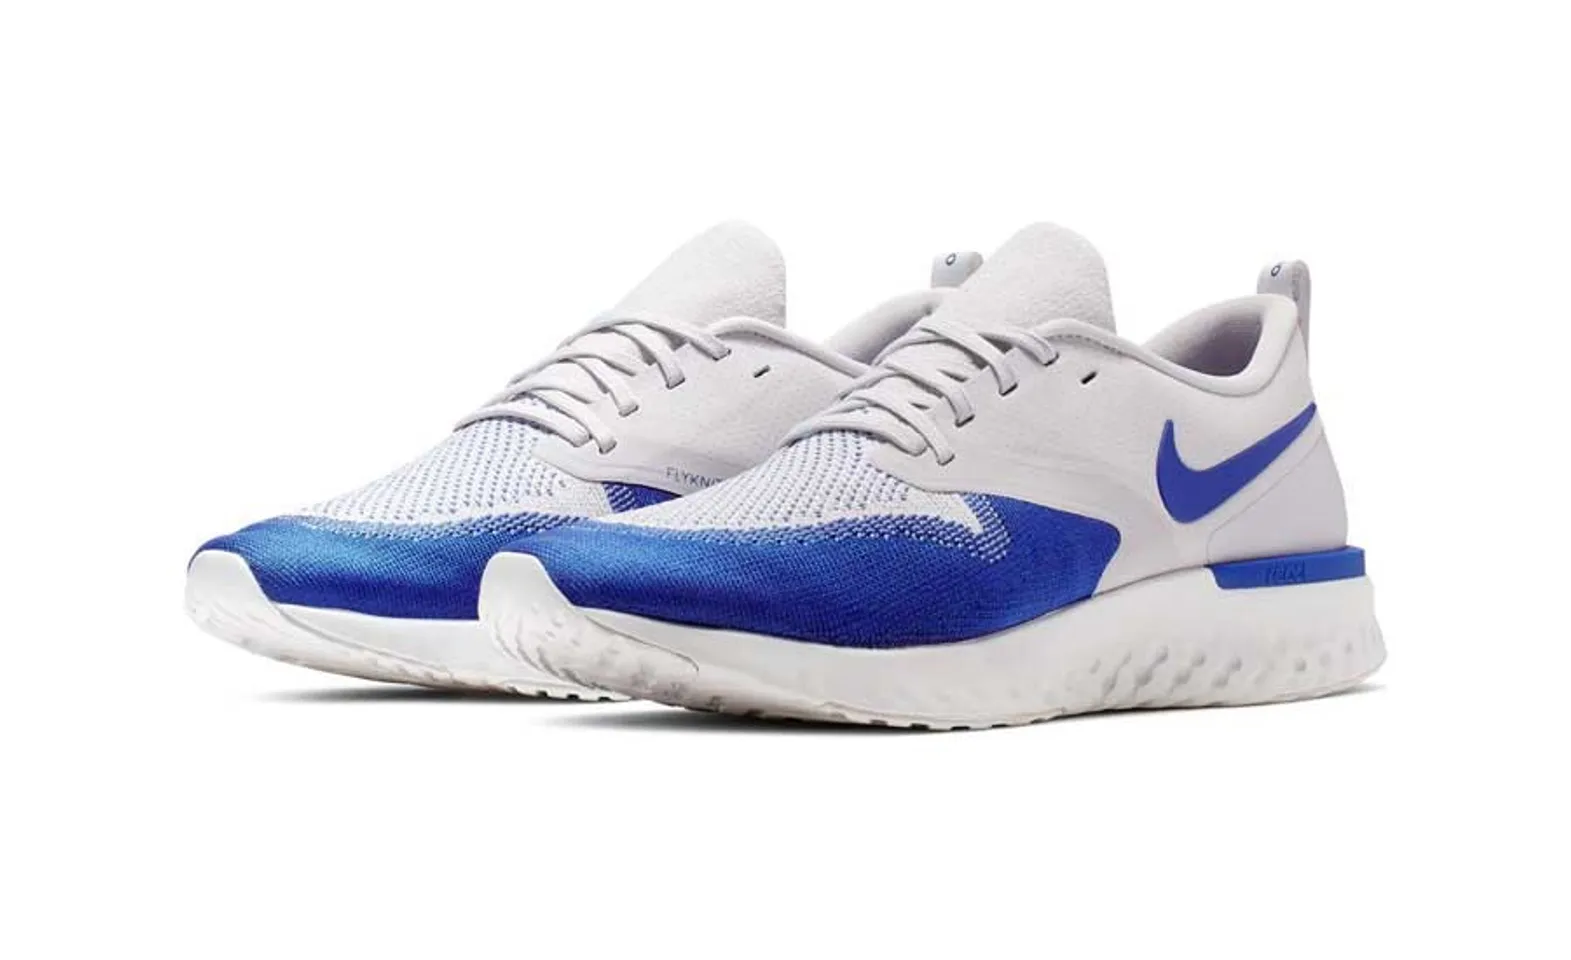 Giày Nike Odyssey React Flyknit 2 Grey Royal Blue màu xám xanh